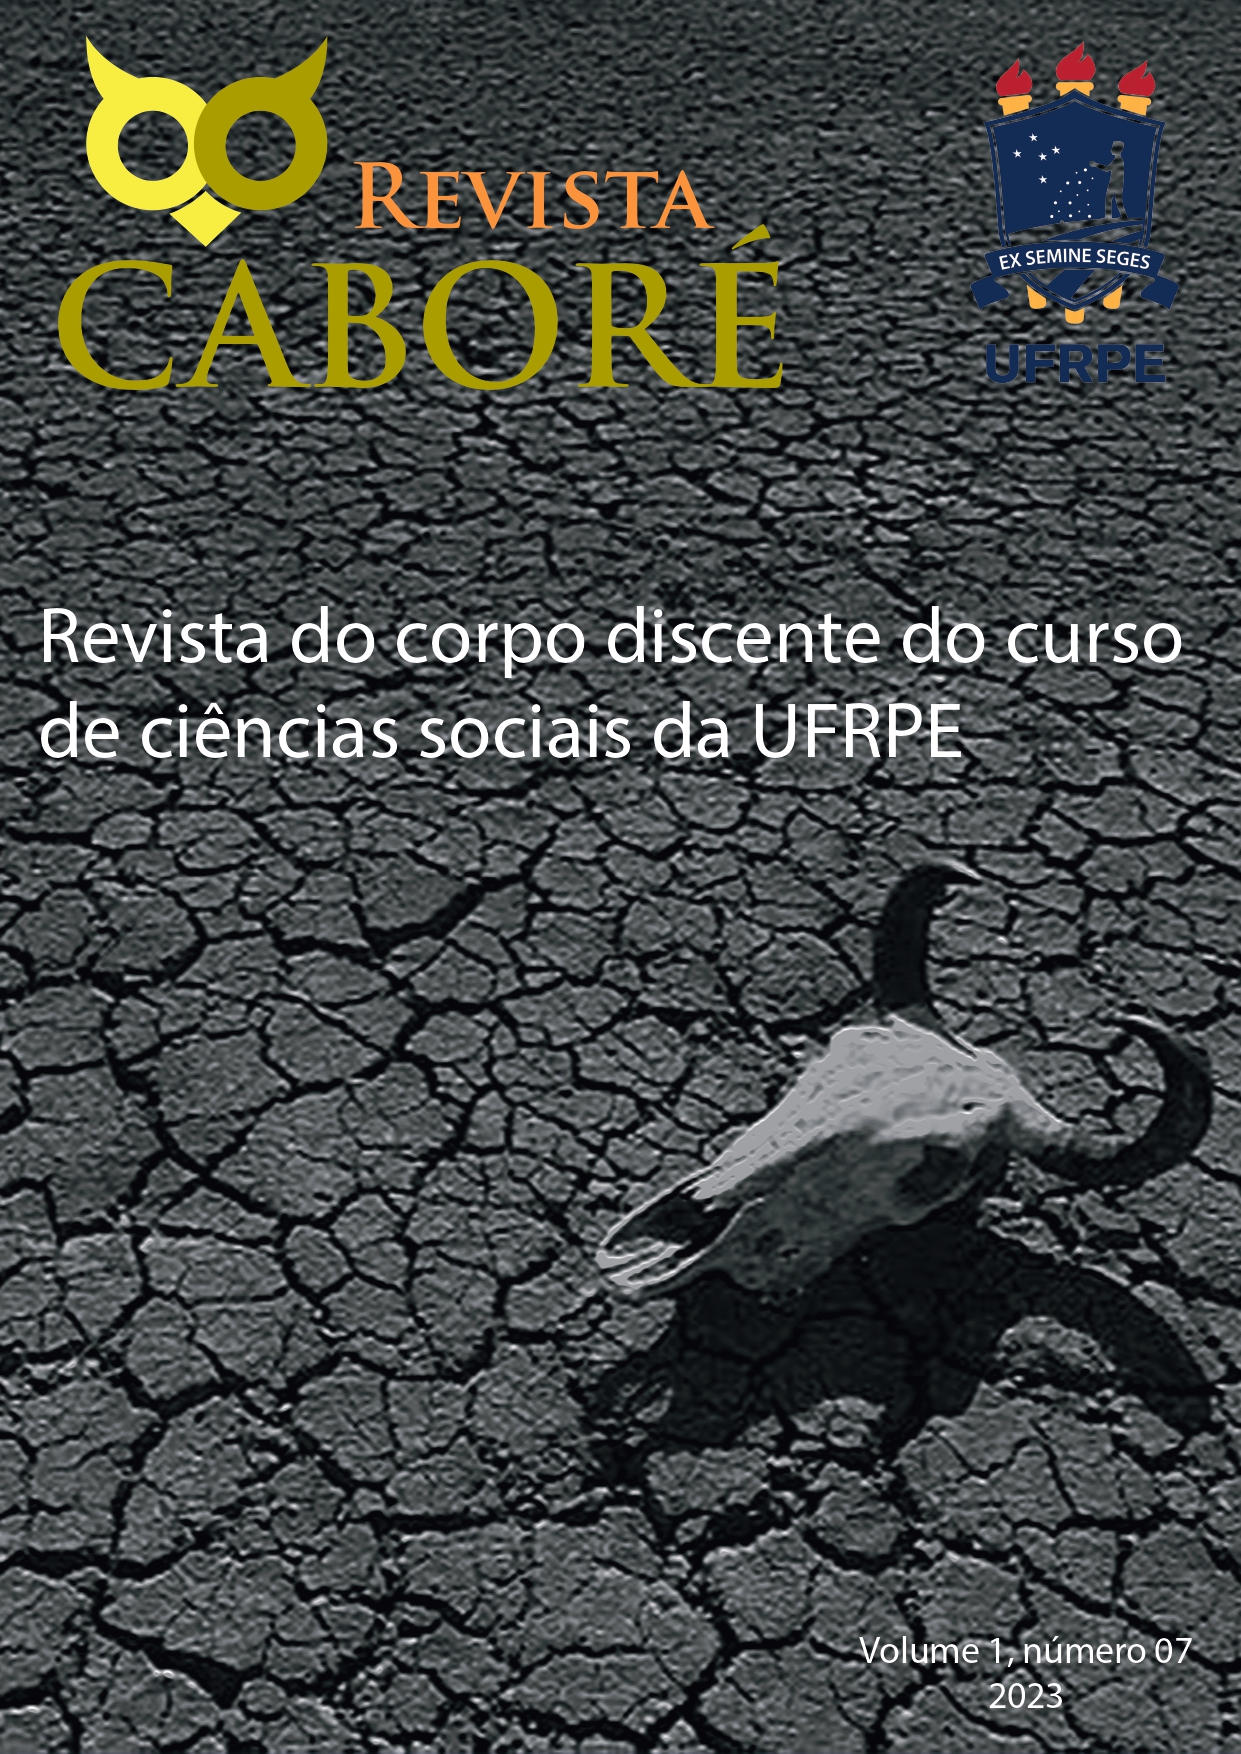 					Visualizar v. 1 n. 7 (2023): Revista Caboré
				